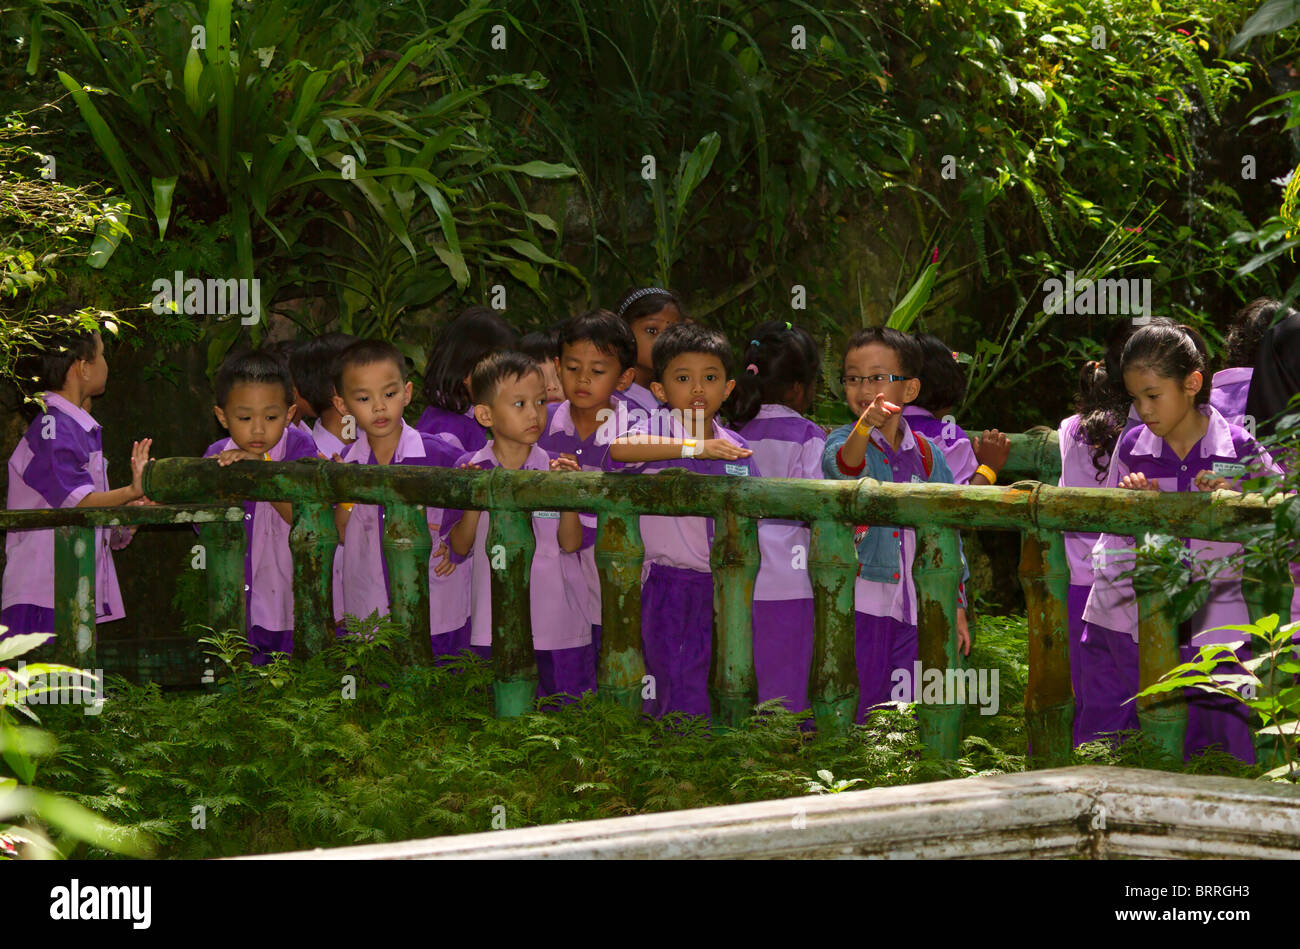 Malaysian écoliers en uniforme sur une sortie au Butterfly Park Kuala Lumpur. Les enfants montrent une gamme de types ethniques Banque D'Images